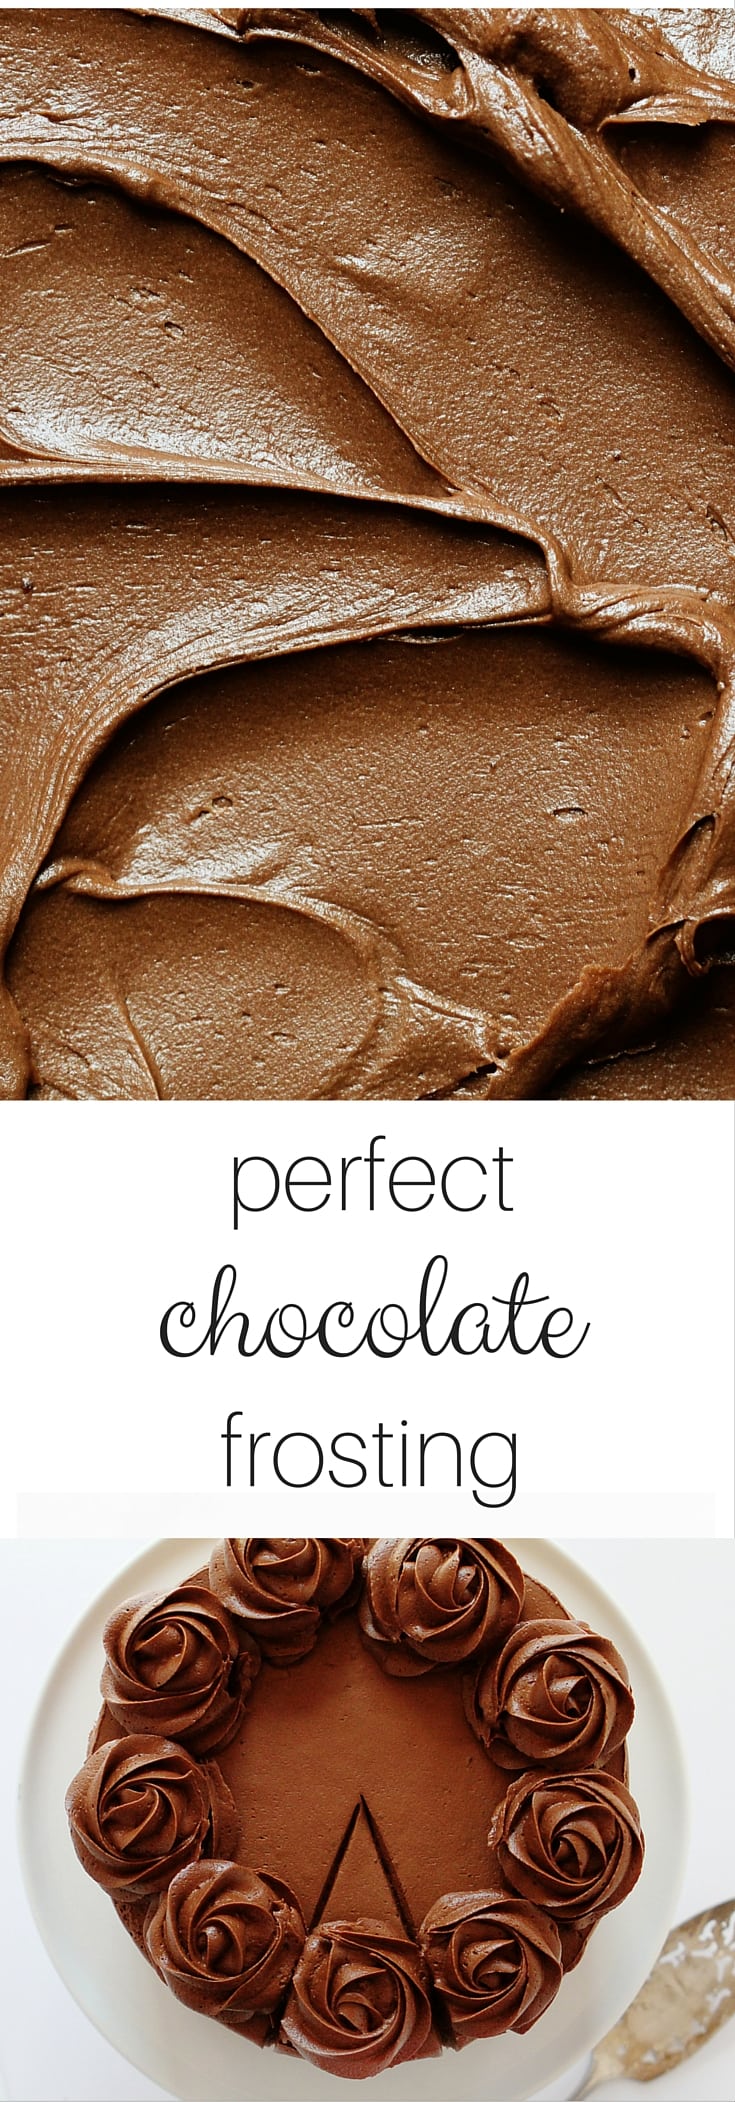 完美的巧克力糖霜!四种独特而神奇的食谱。这是你唯一需要的巧克力糖霜别针!